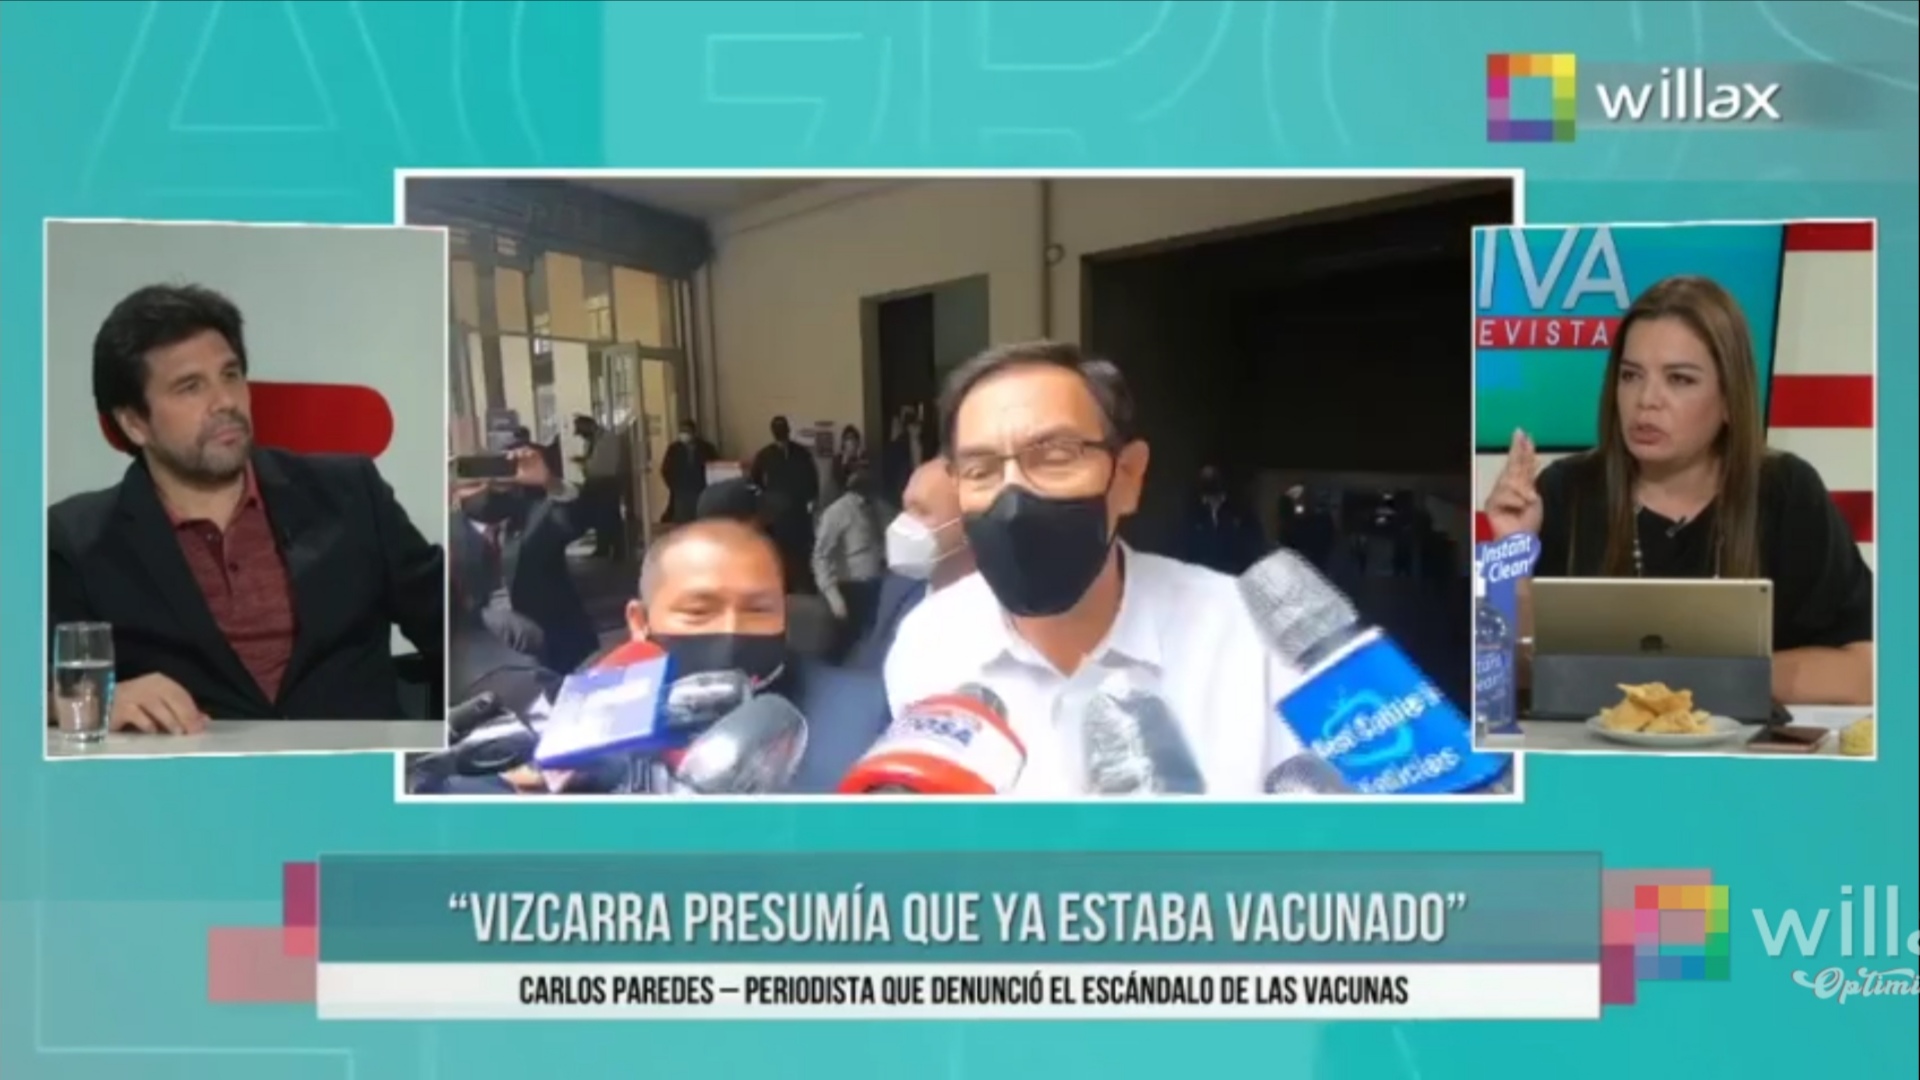 Carlos Paredes: “Vizcarra presumía ya haber sido vacunado”